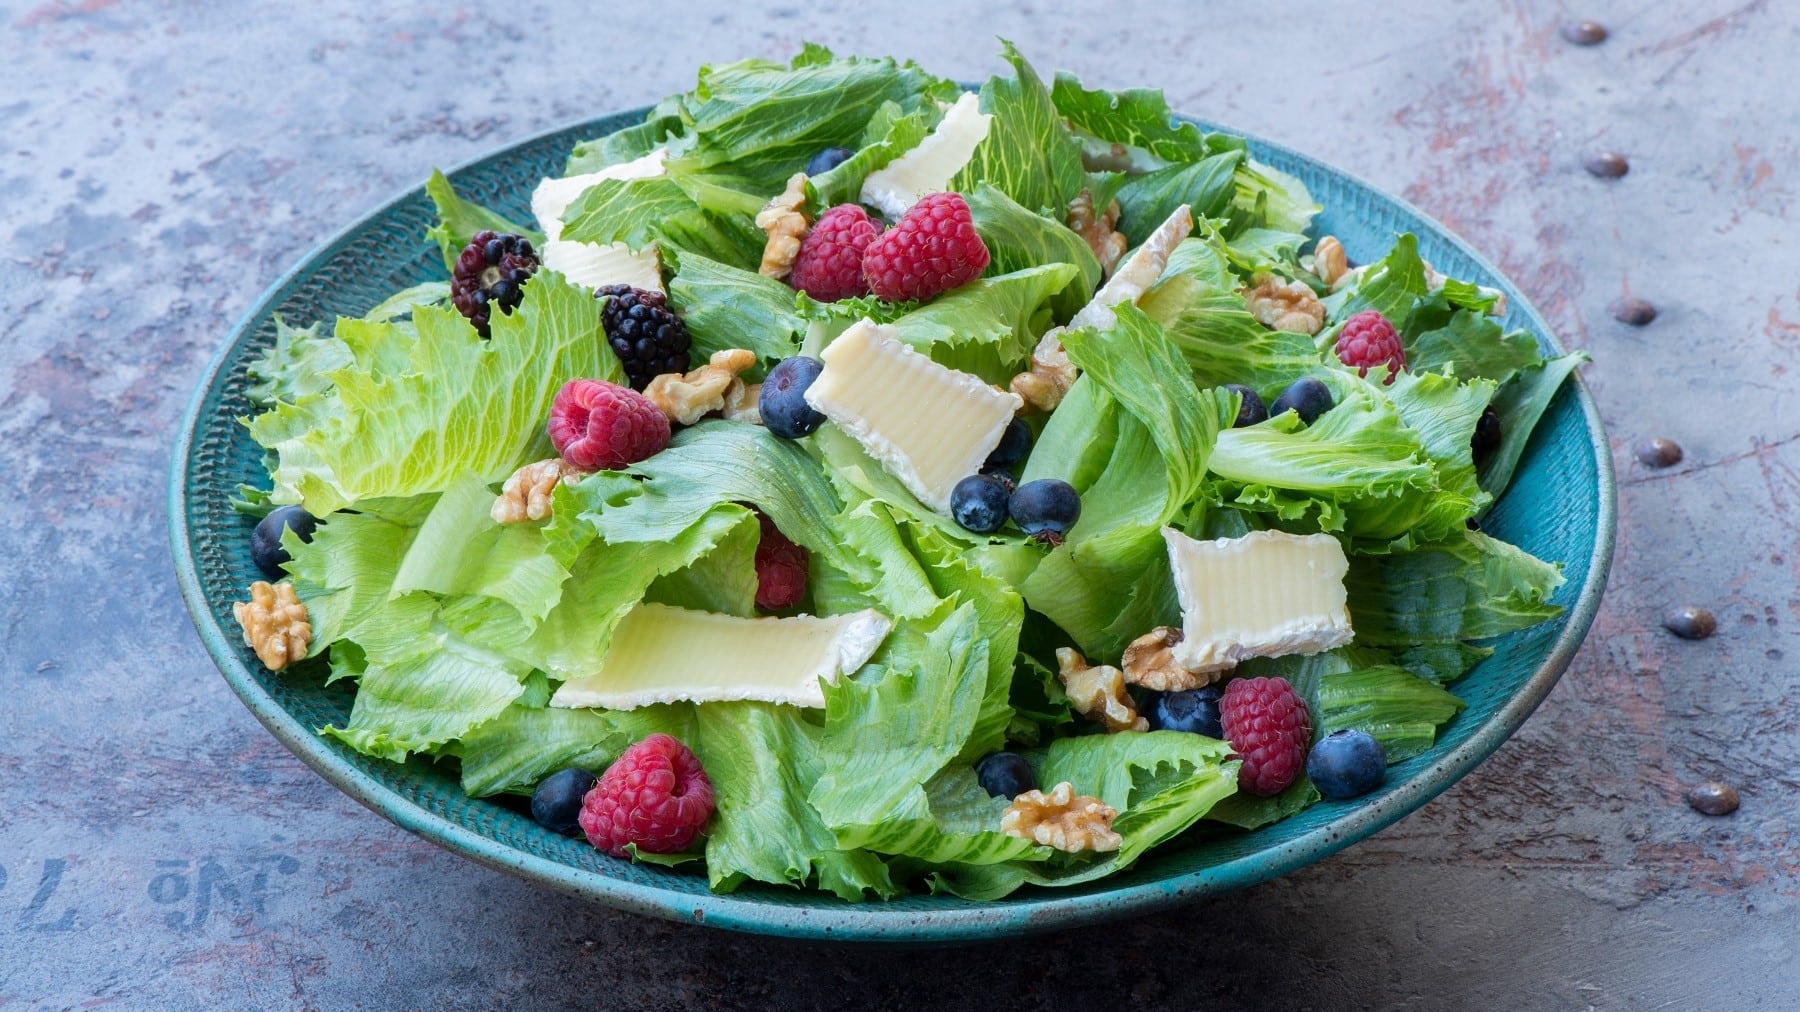 Endivien-Salat mit Beeren und Brie, garniert mit Walnüssen und saurer Vinaigrette und serviert in einer großen, blauen Tonschale auf einem hellgrauen Schiefertisch